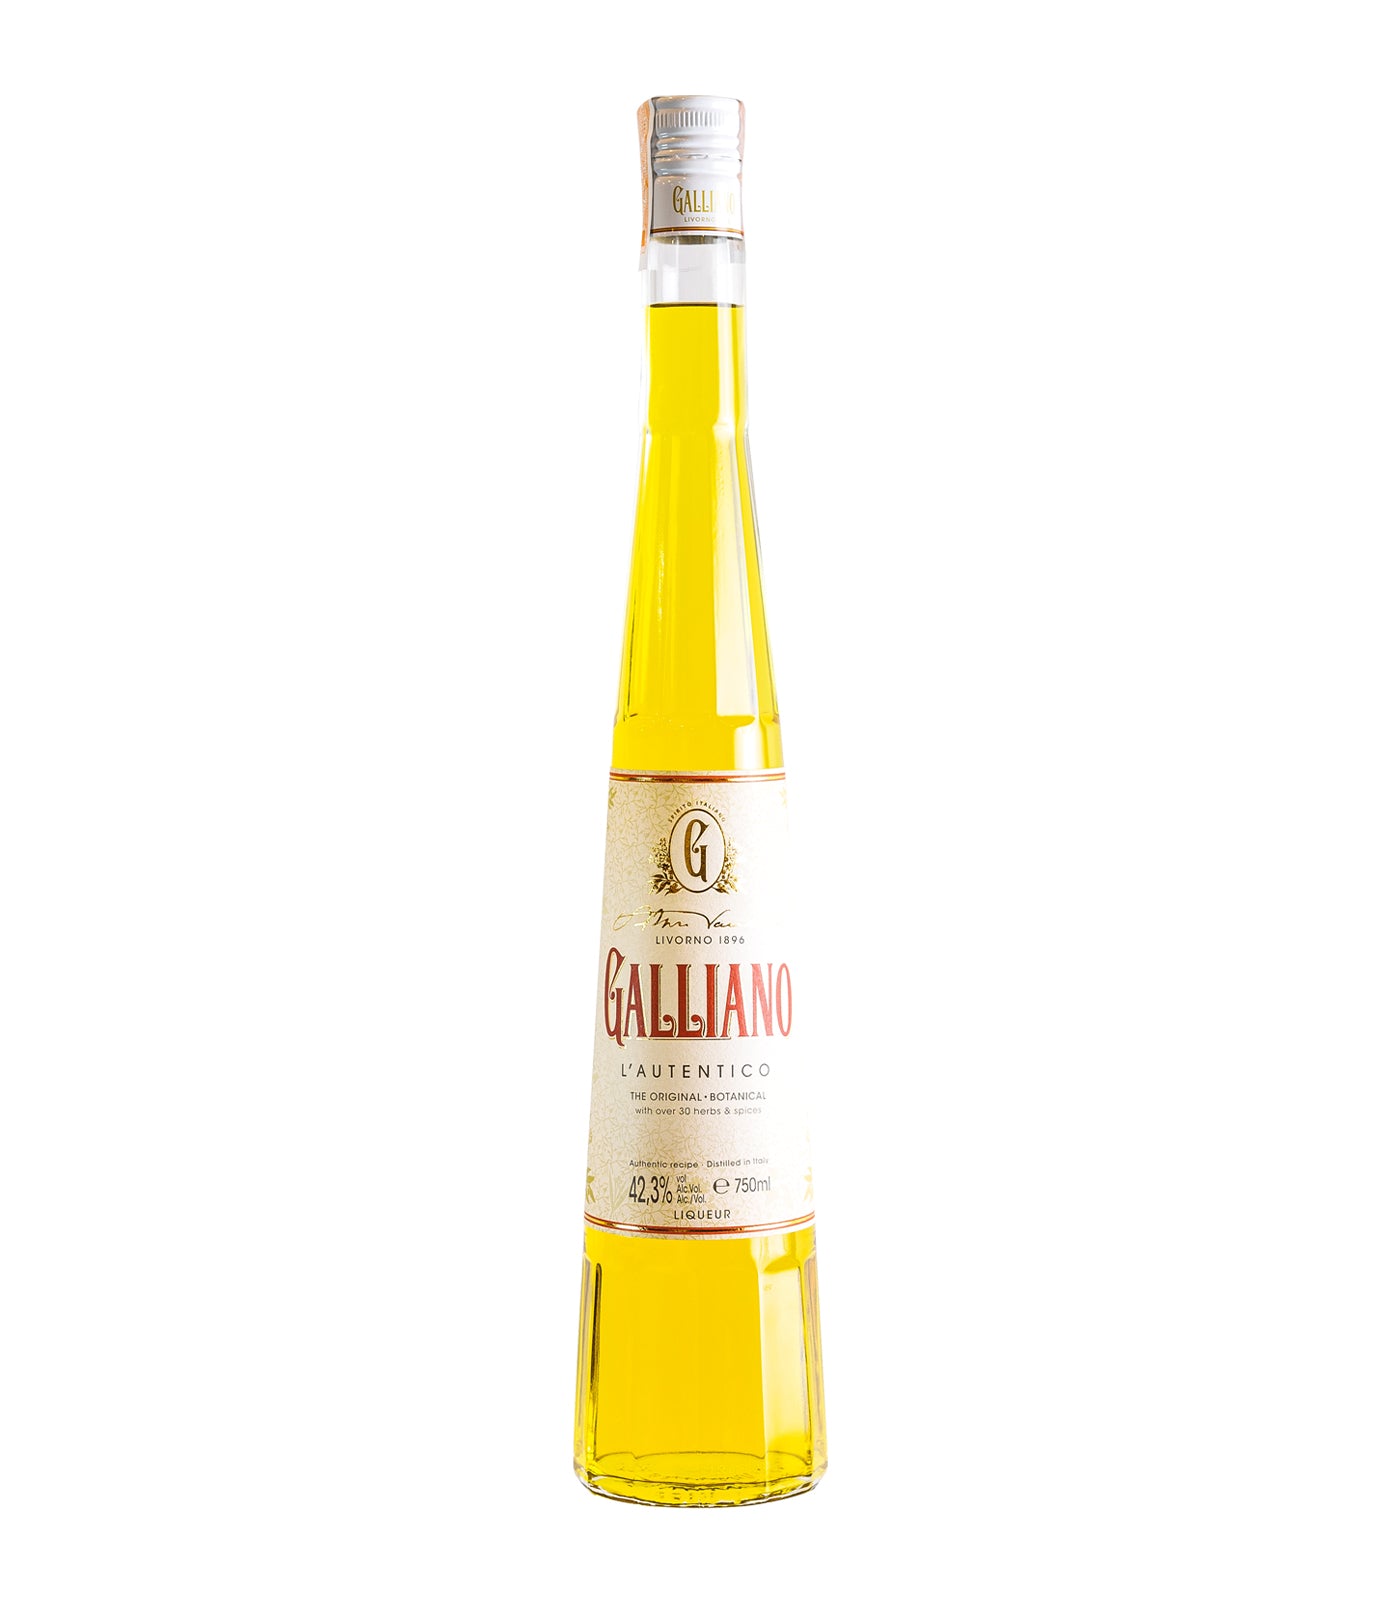 Galliano Liquor Authentico Liqueur 700ml.